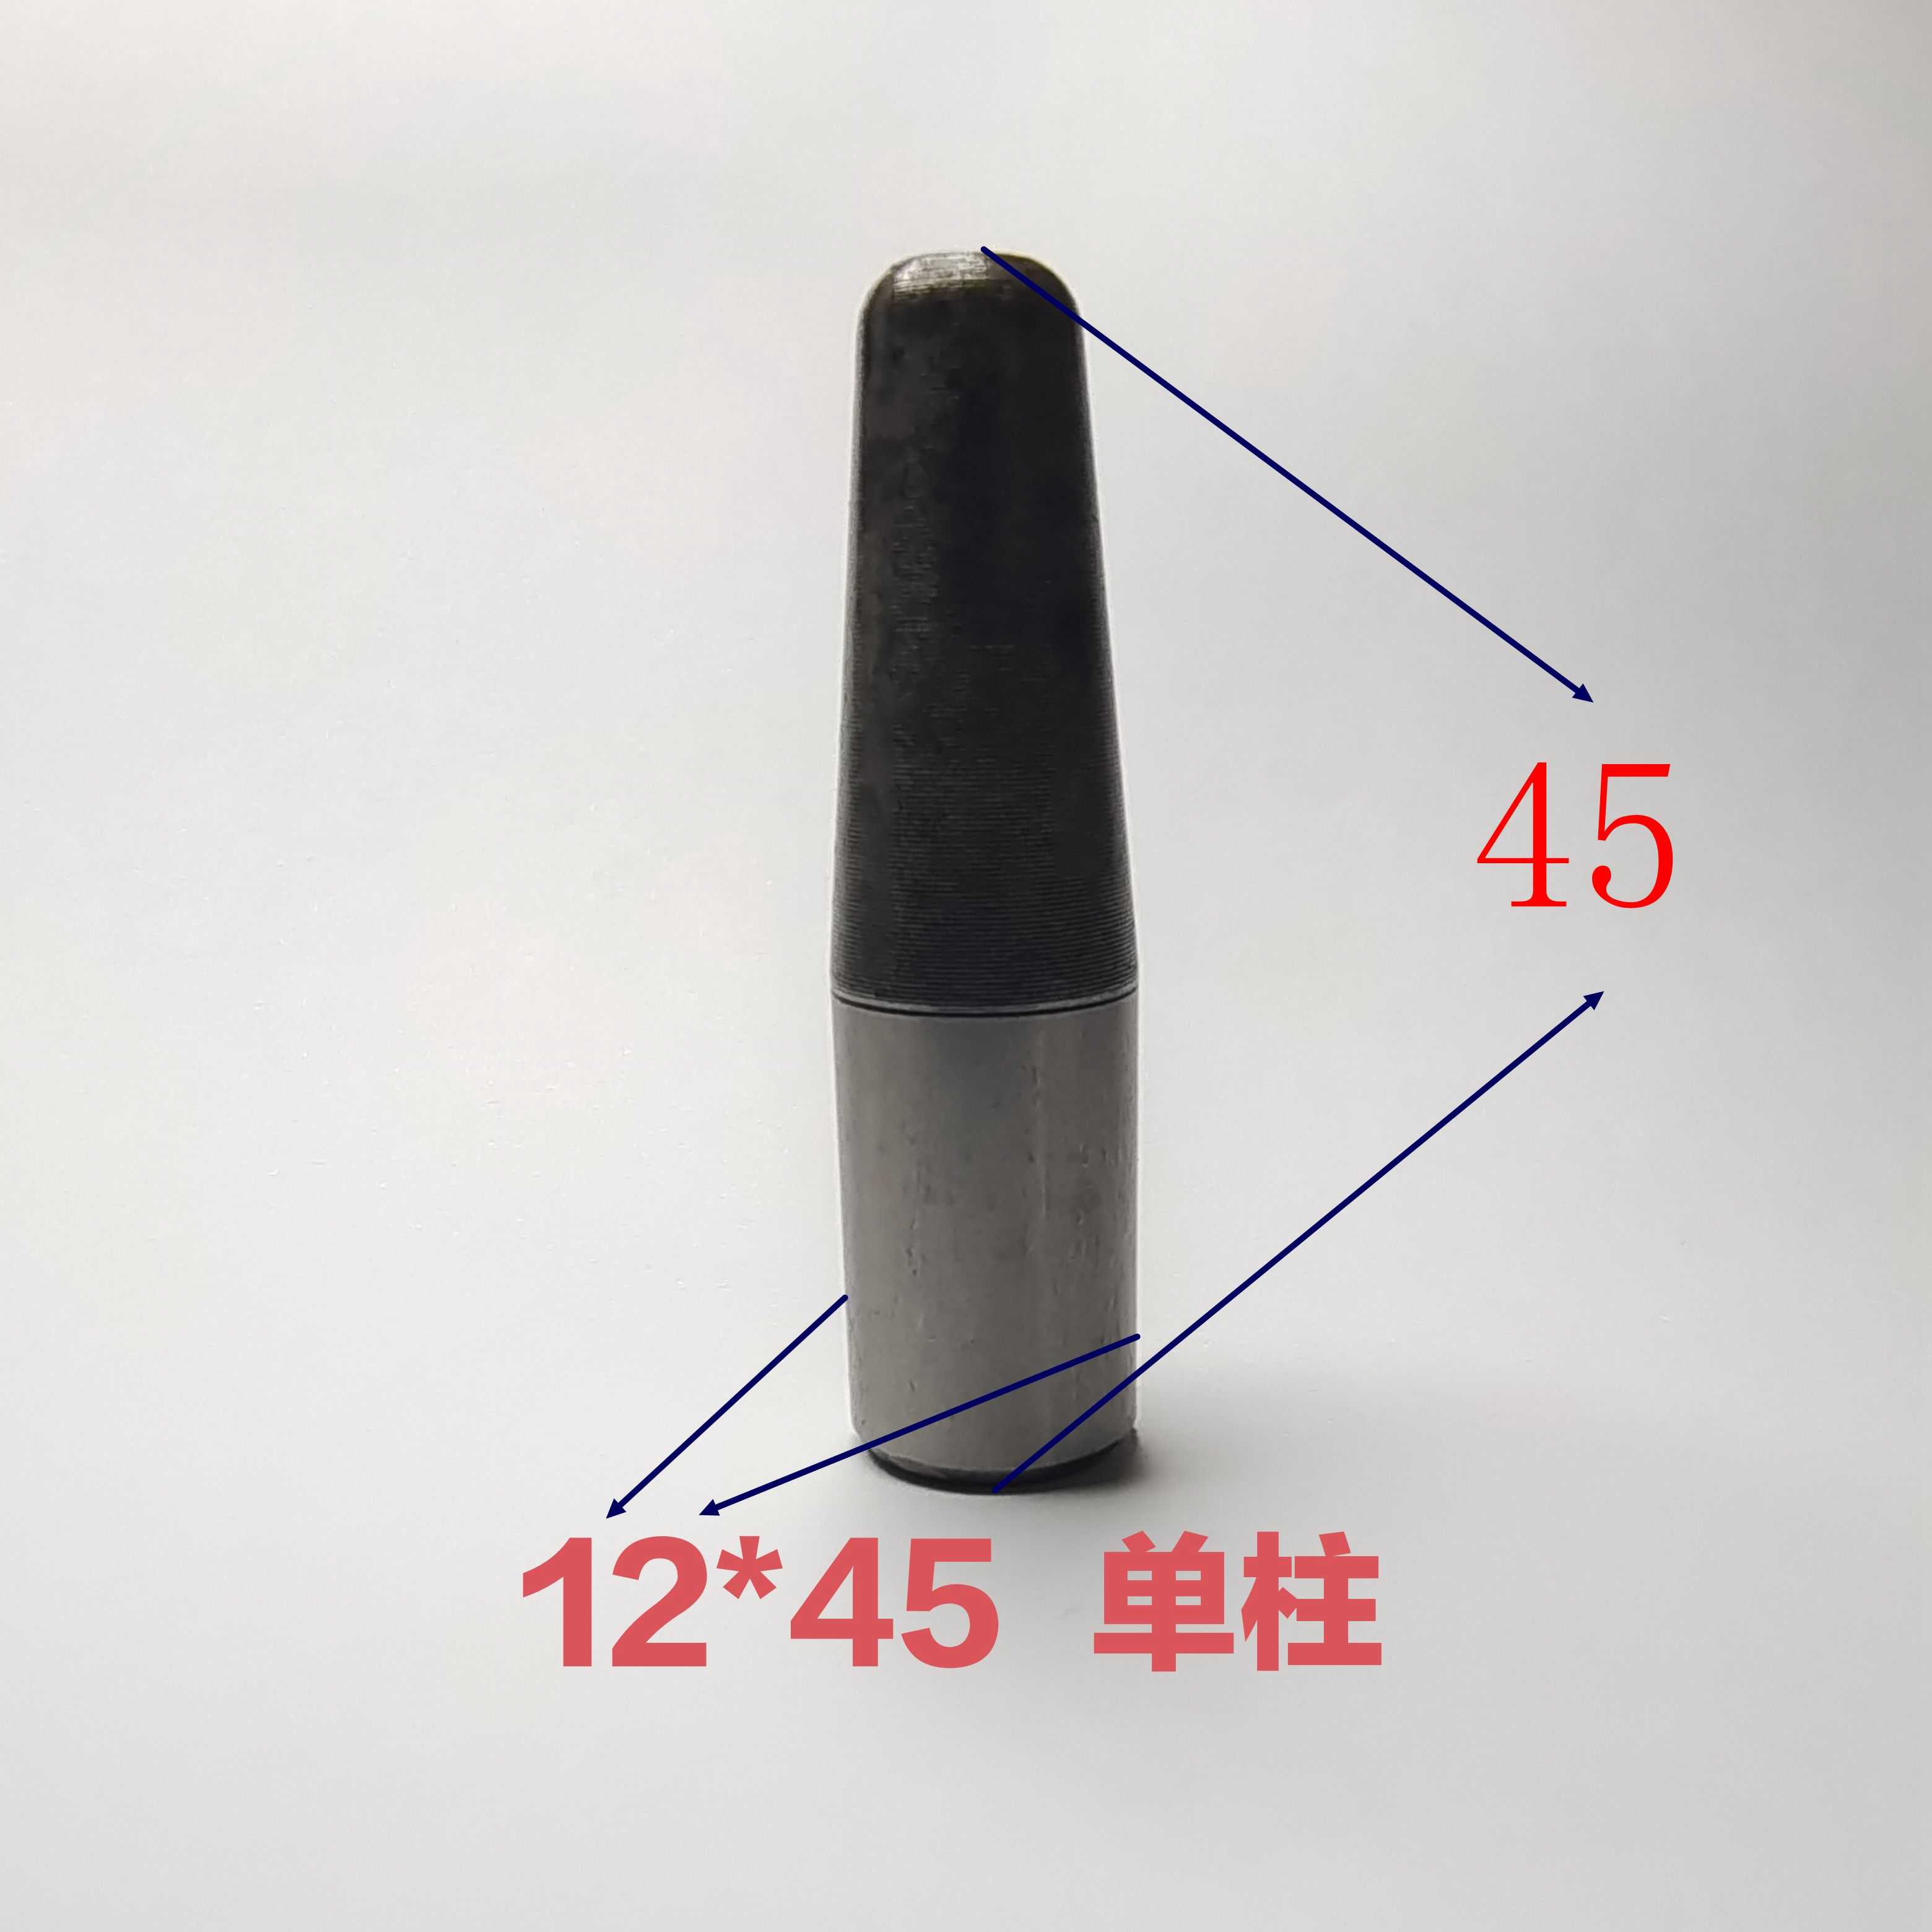 硅胶橡胶模具导柱导套单柱套配合使用定位销套材质20cr硬度58-62 - 图1